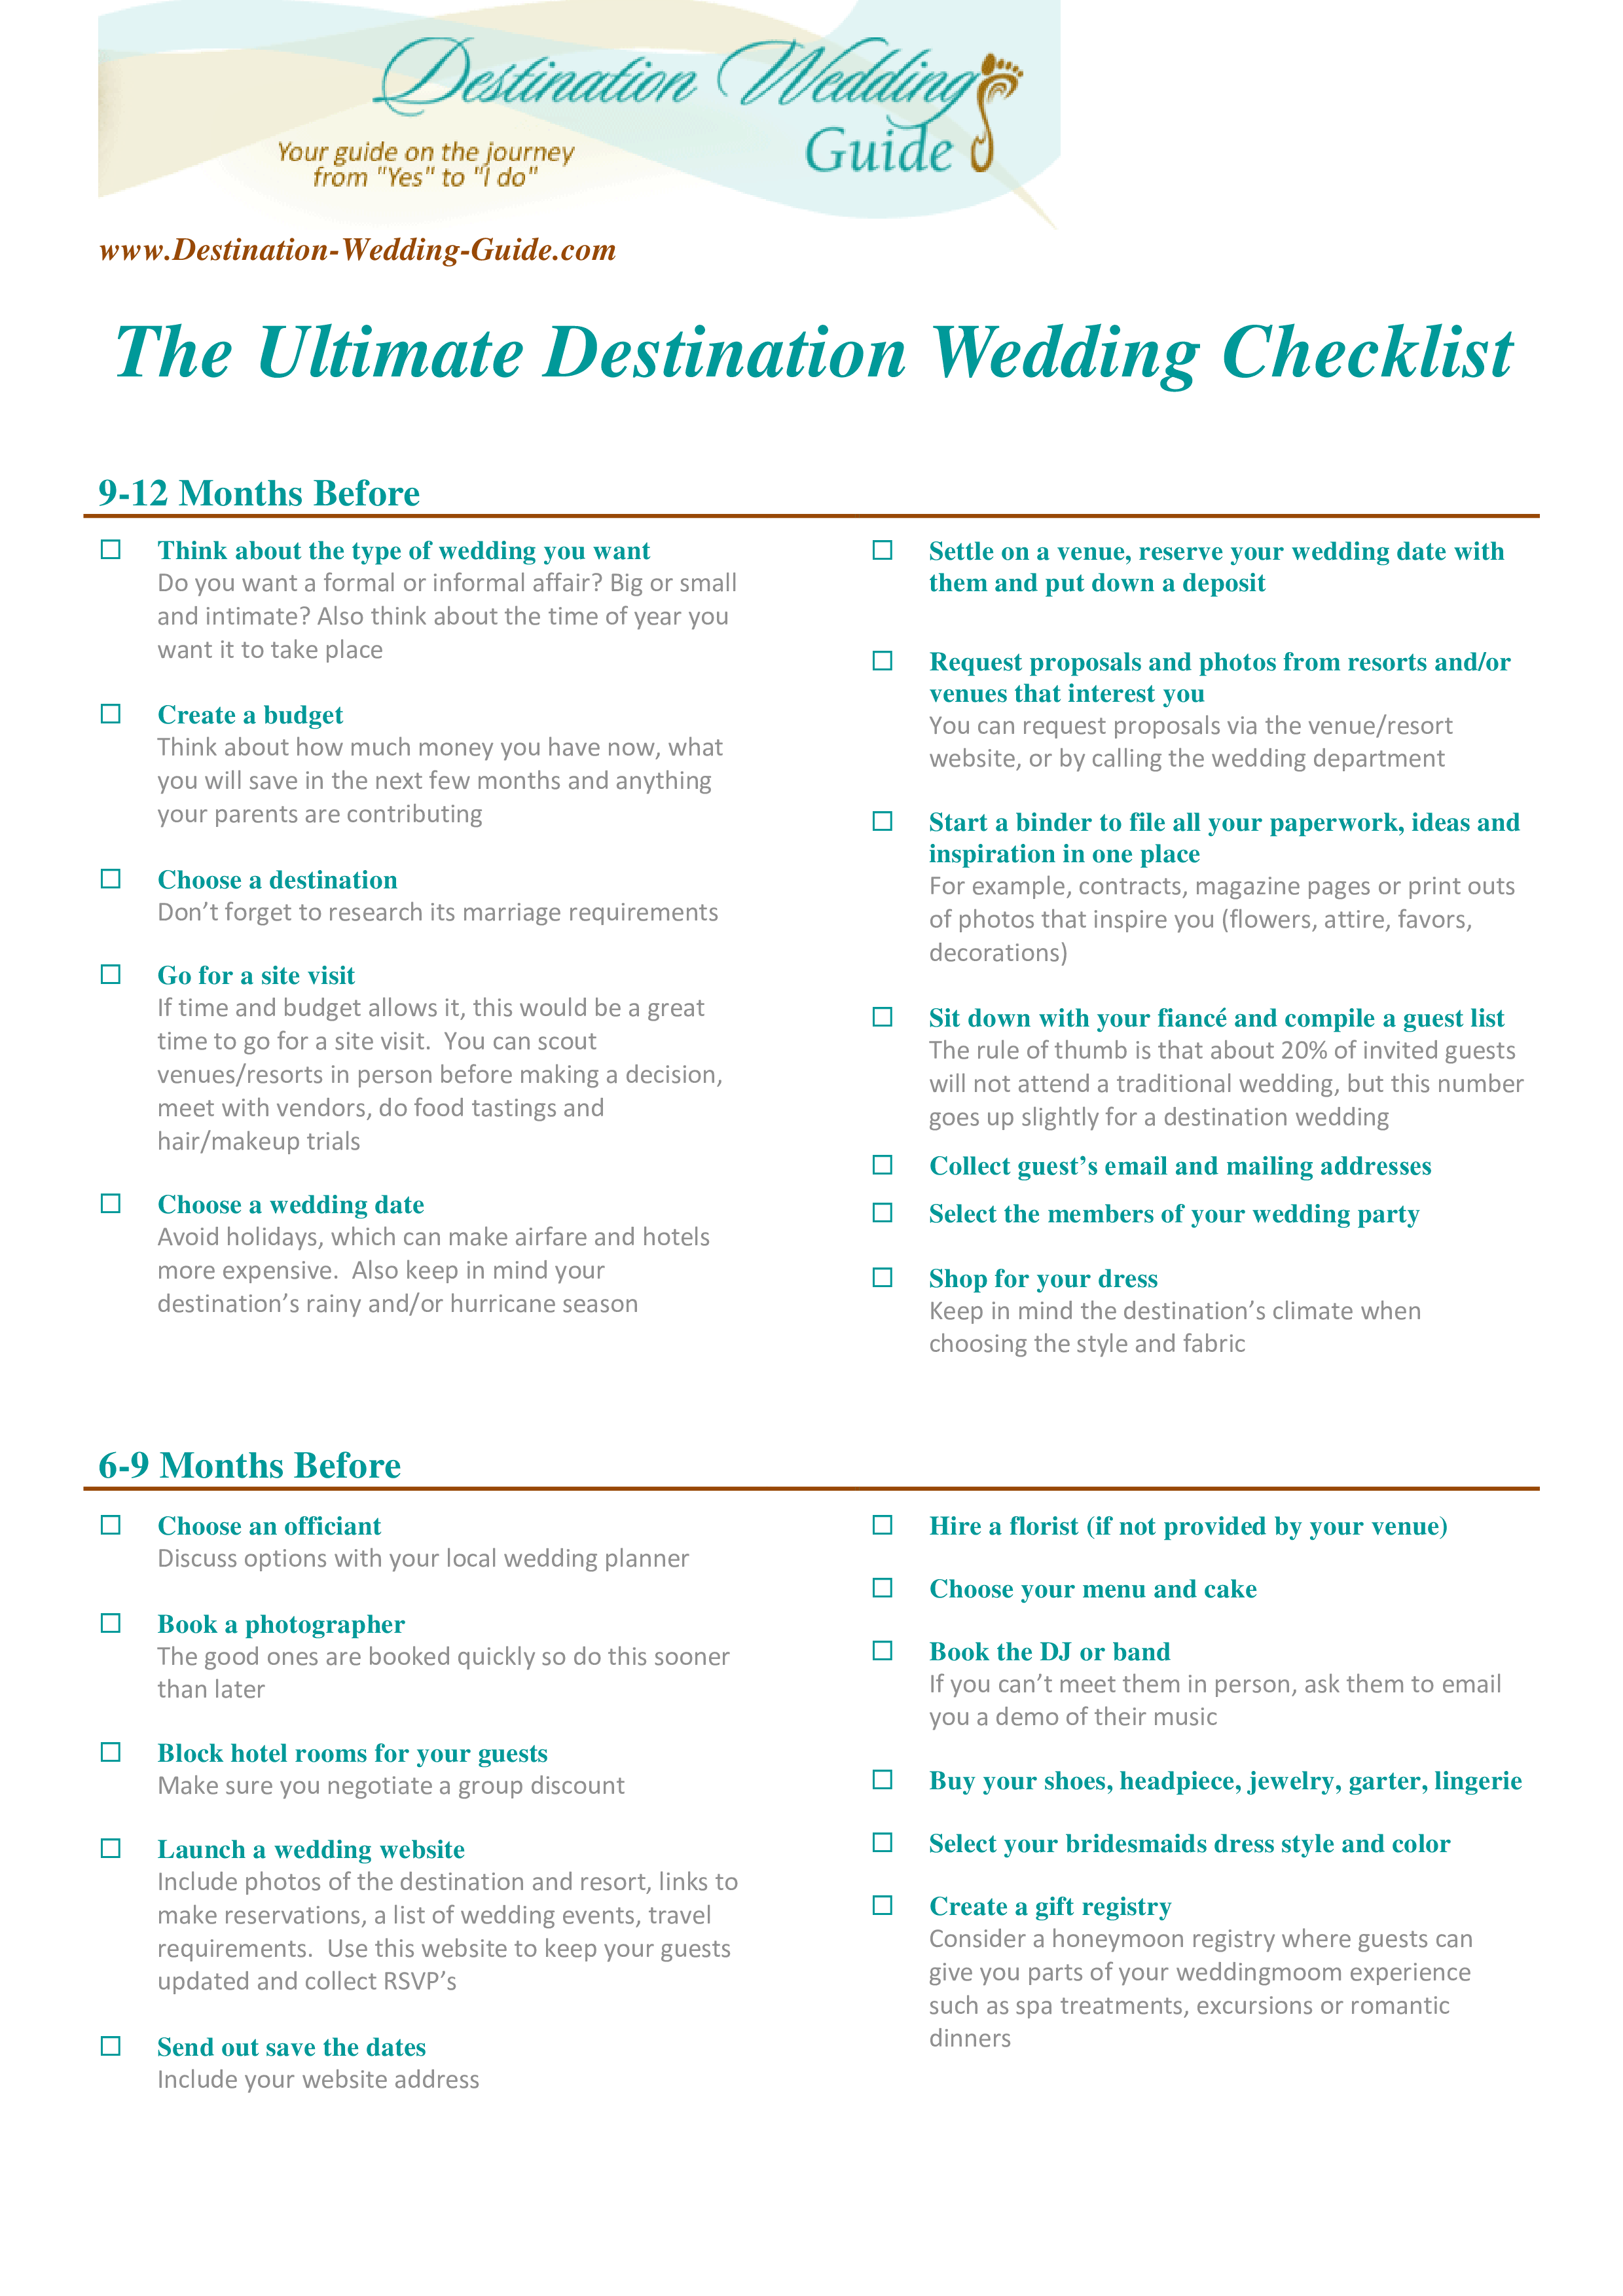 Kostenloses Ultimate Destination Wedding Checklist Regarding Wedding Timeline Checklist Template Within Wedding Timeline Checklist Template